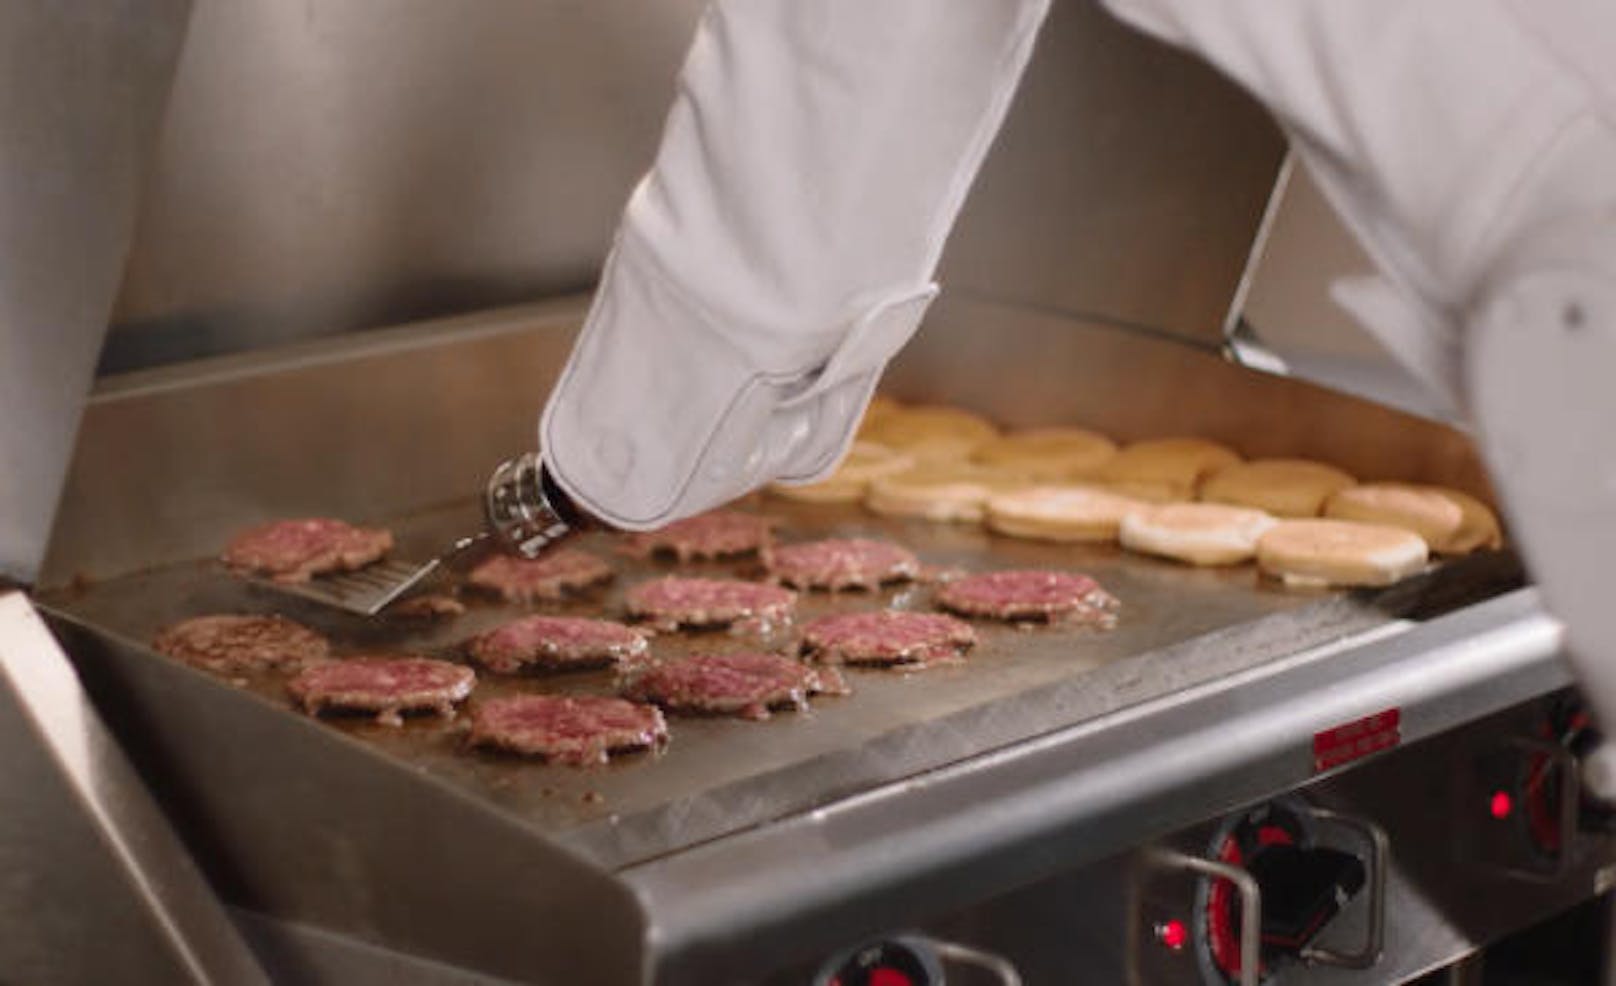 Flippy heißt der weltweit erste autonome Küchenroboter und sein Name ist Programm. Der Burger-Brat-Roboter erkennt mithilfe von künstlicher Intelligenz und Thermo-Sicht, wann Burgerbrötchen oder Patty fertig gebraten sind und "flippt" sie. Laut dem Hersteller Miso Robotics kann Flippy bis zu 300 Burger in der Stunde braten. Genau diese Effizienz ist dem Roboter nun zum Verhängnis geworden: Nach nur zwei Tagen Arbeit im Restaurant CaliBurger in Pasadena im US-Bundesstaat Kalifornien wurde ihm gekündigt. Der Grund: Die menschlichen Kollegen konnten bei Flippys Tempo nicht mehr mithalten.